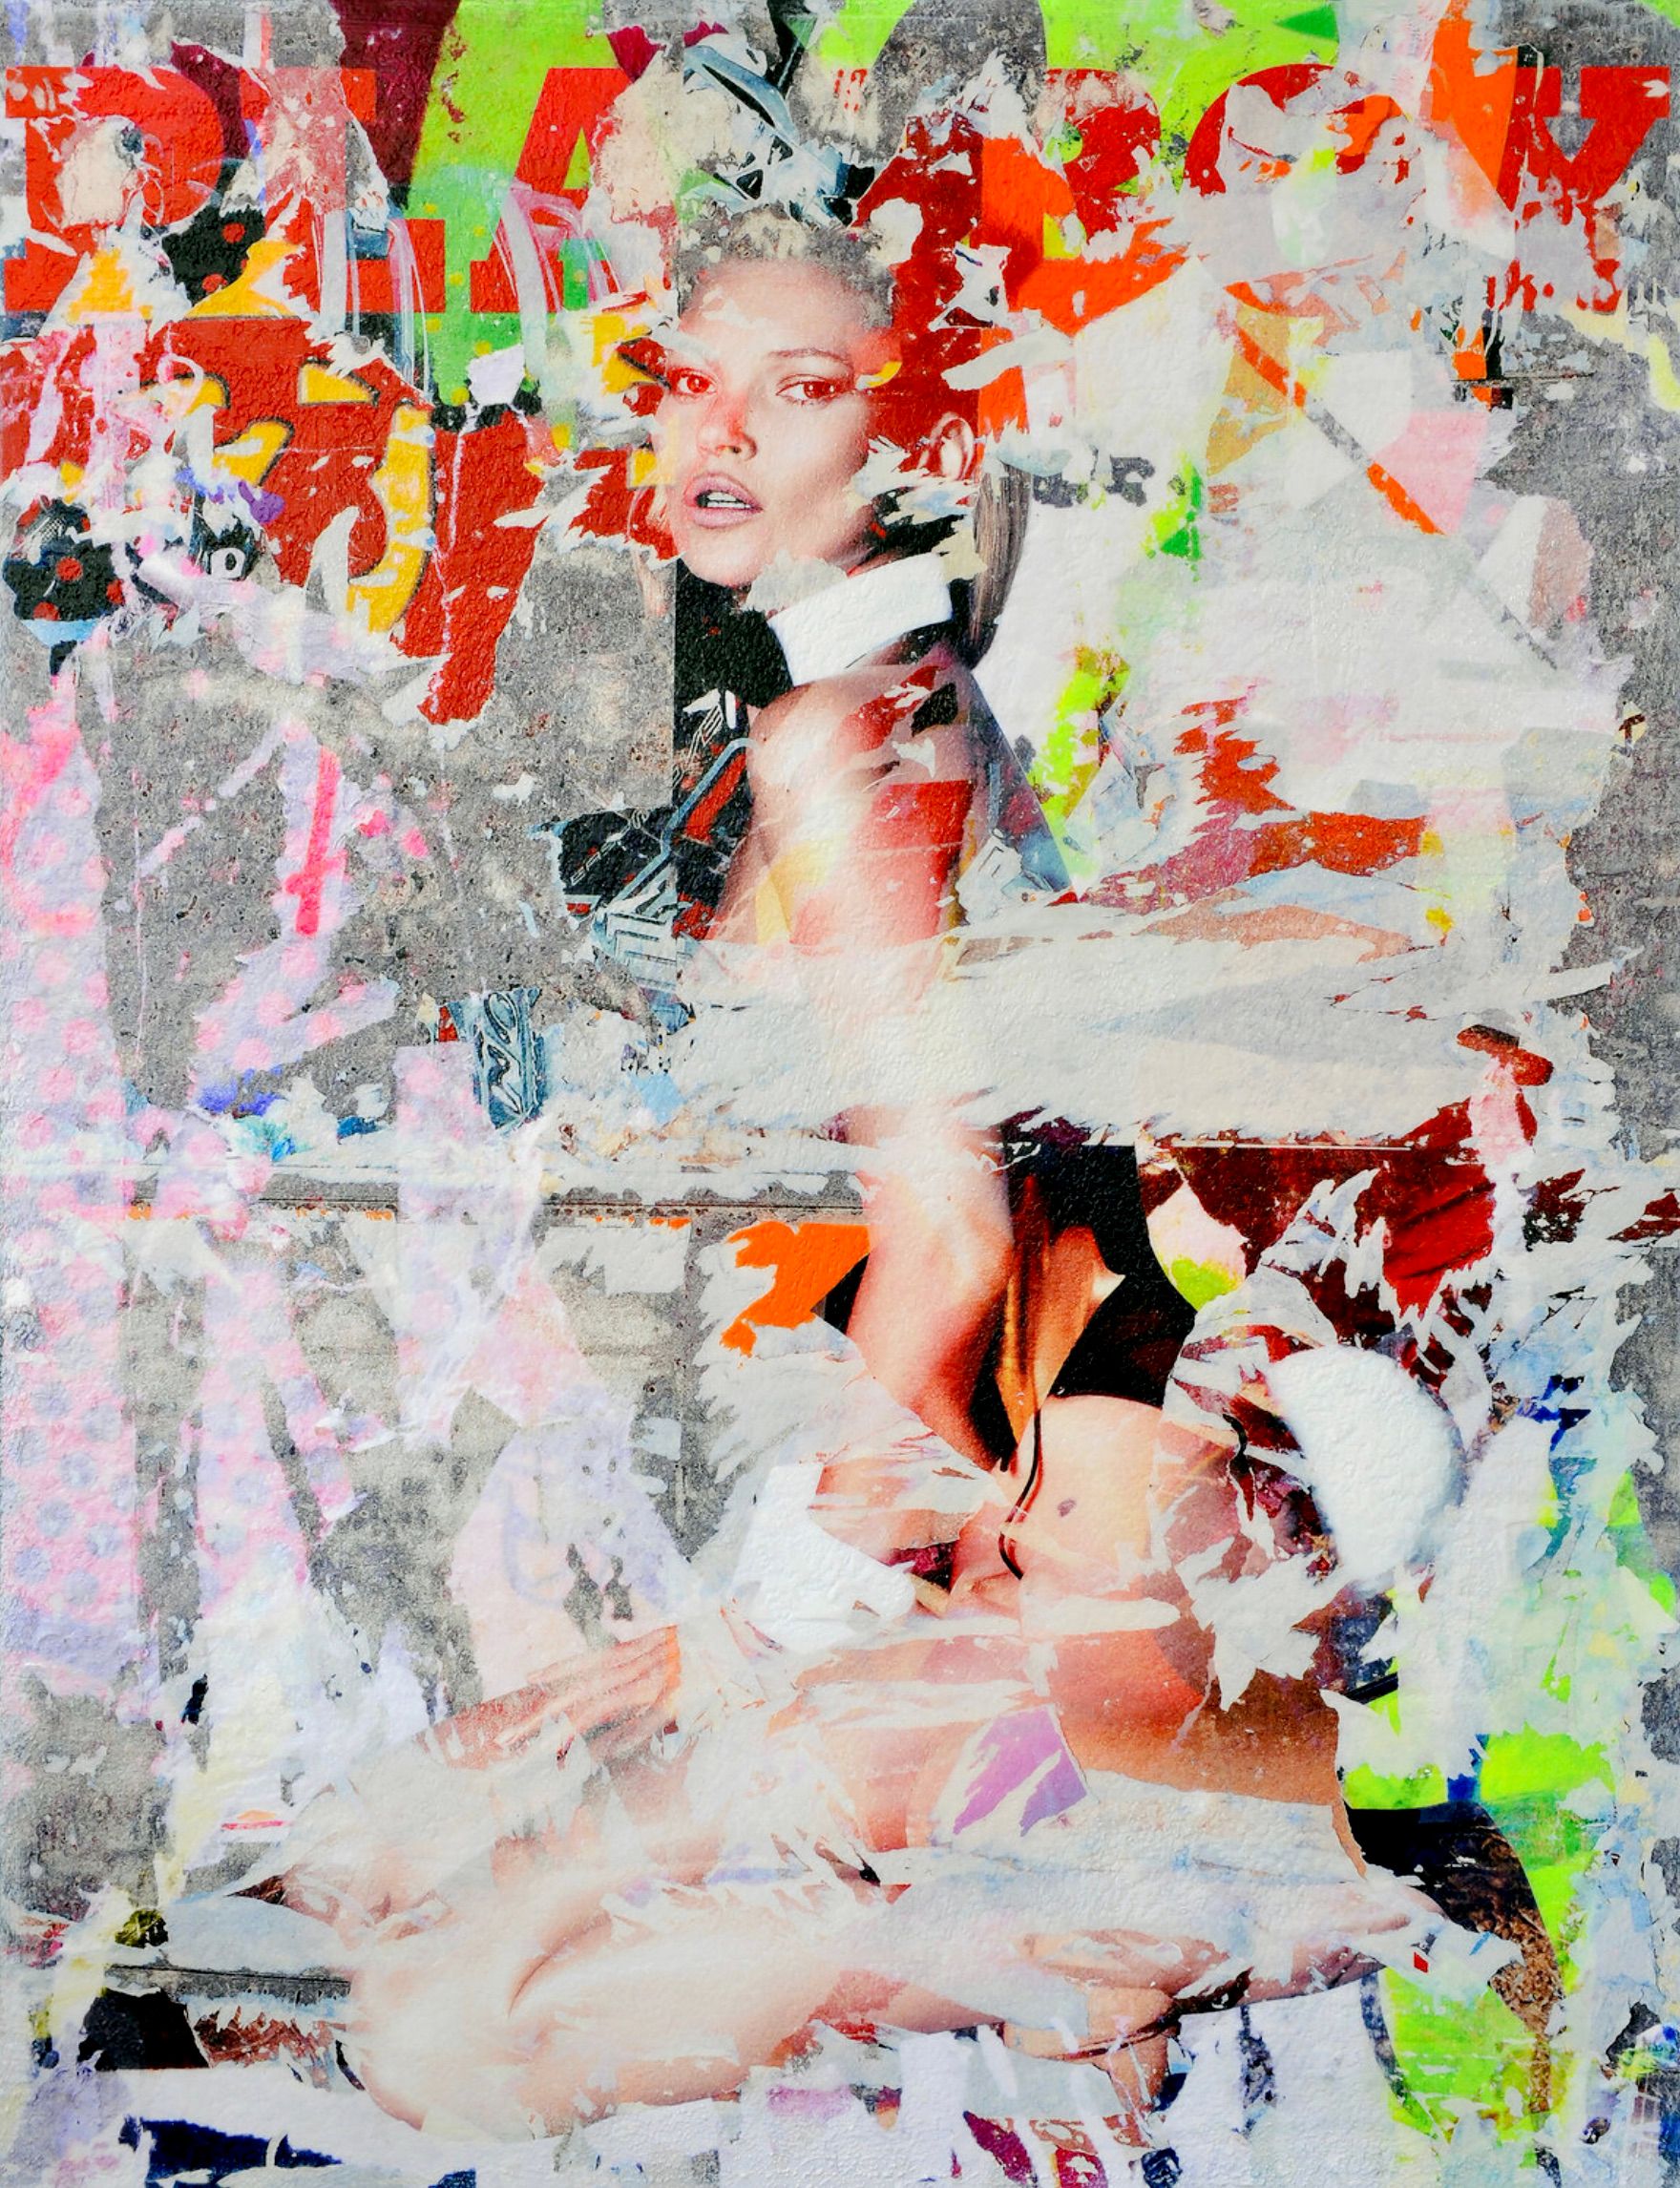 Karin Vermeer的 "Kate Moss playboy "是对照片、绘画和拼贴画的数字组合和处理，成为新的、原创的彩色街头艺术作品。